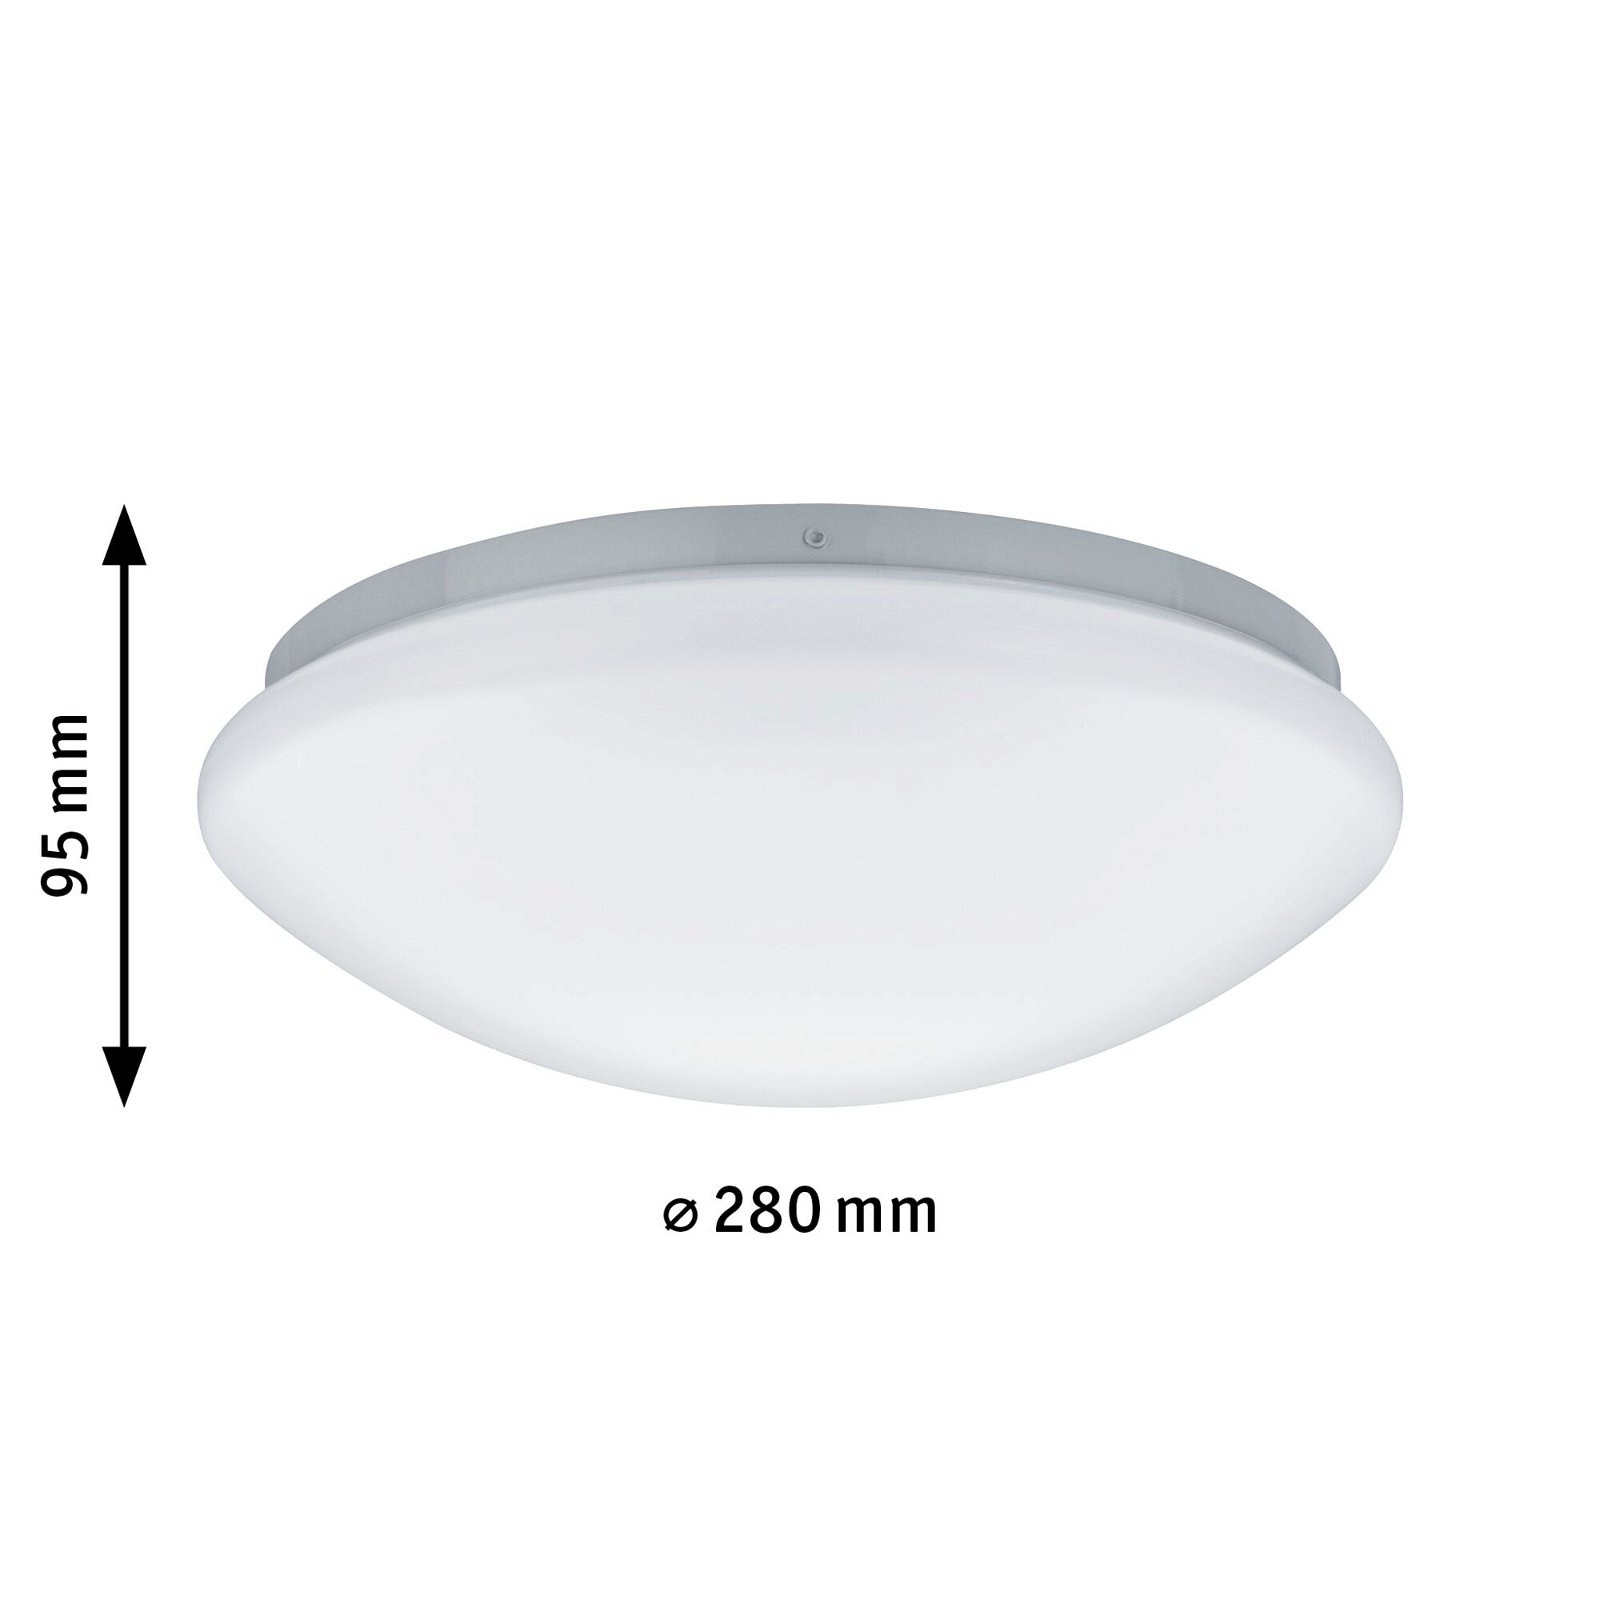 LED Ceiling luminaire Leonis High frequency sensor IP44 2700K 780lm 230V 12,5W White